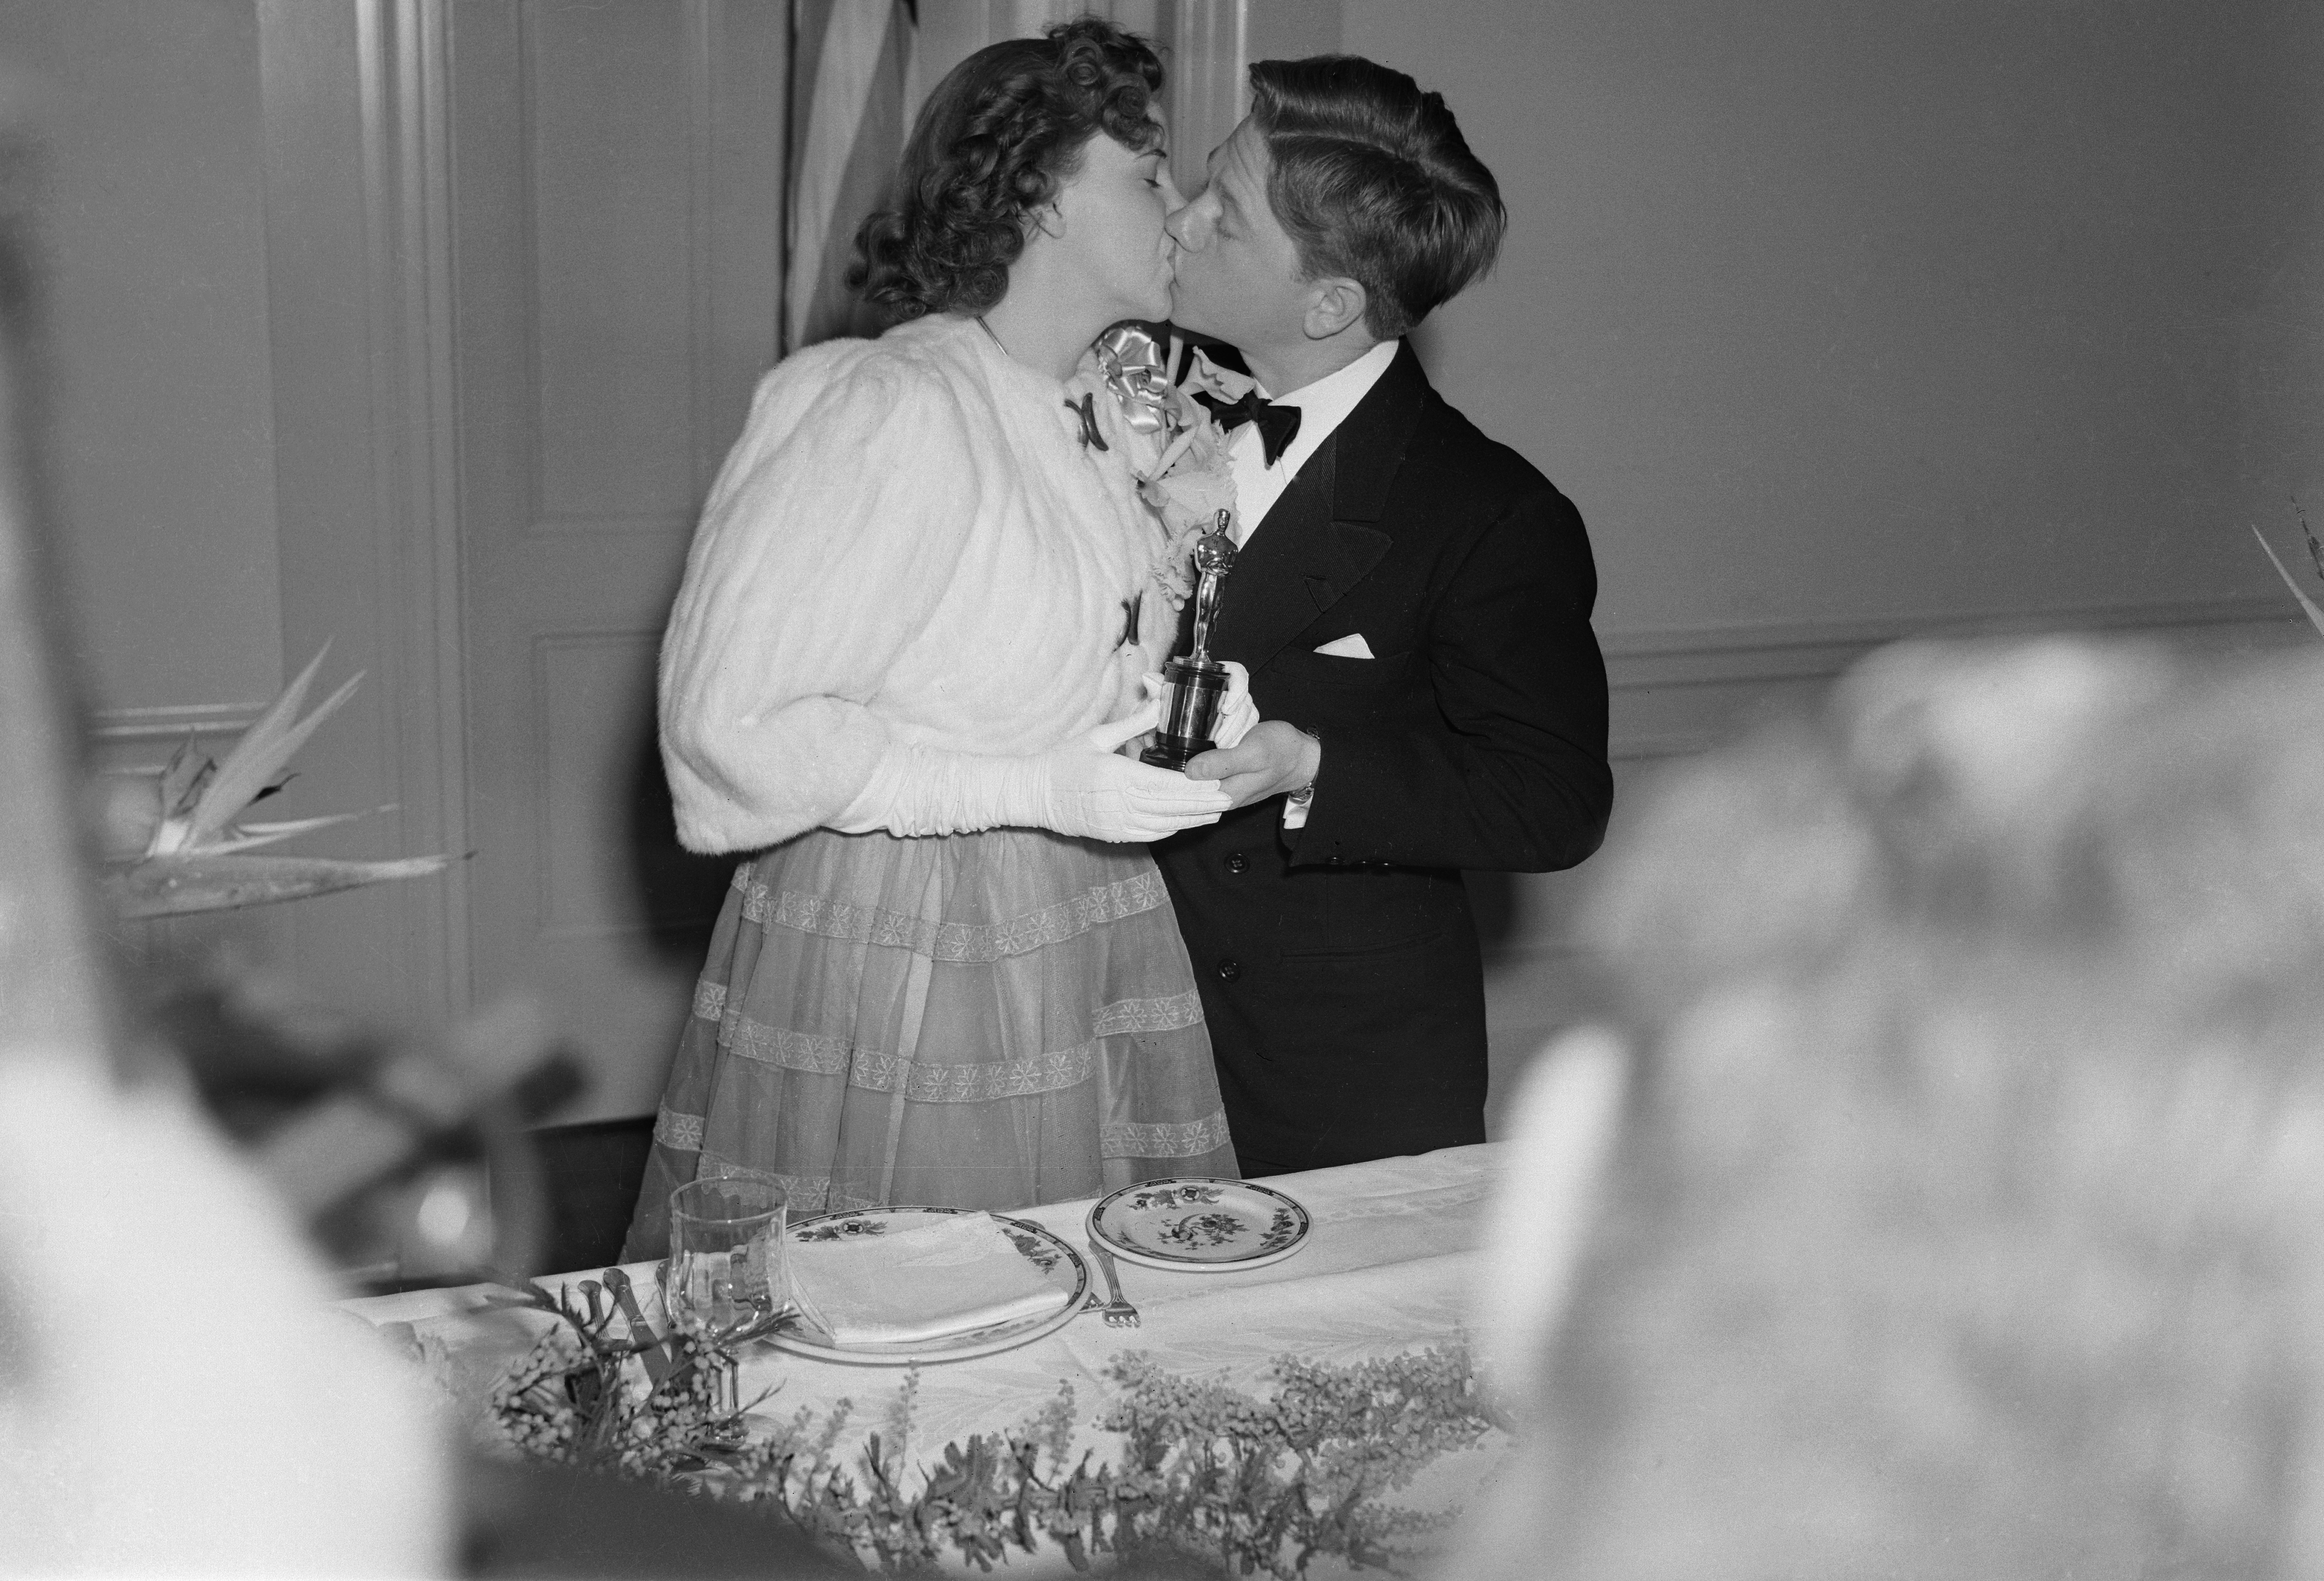 Mickey Rooney, protagonizó un beso y entregó un premio especial de la Academia a Judy Garland, quien fue galardonada como la mejor actriz juvenil de 1939 en la 12ª Cena Anual de Premios de la Academia de Artes y Ciencias Cinematográficas, al verlos cotidianamente juntos se rumoró que fueron pareja, sin embargo ellos aseguraron que fue sólo amistad (Foto: Bettmann Archive)